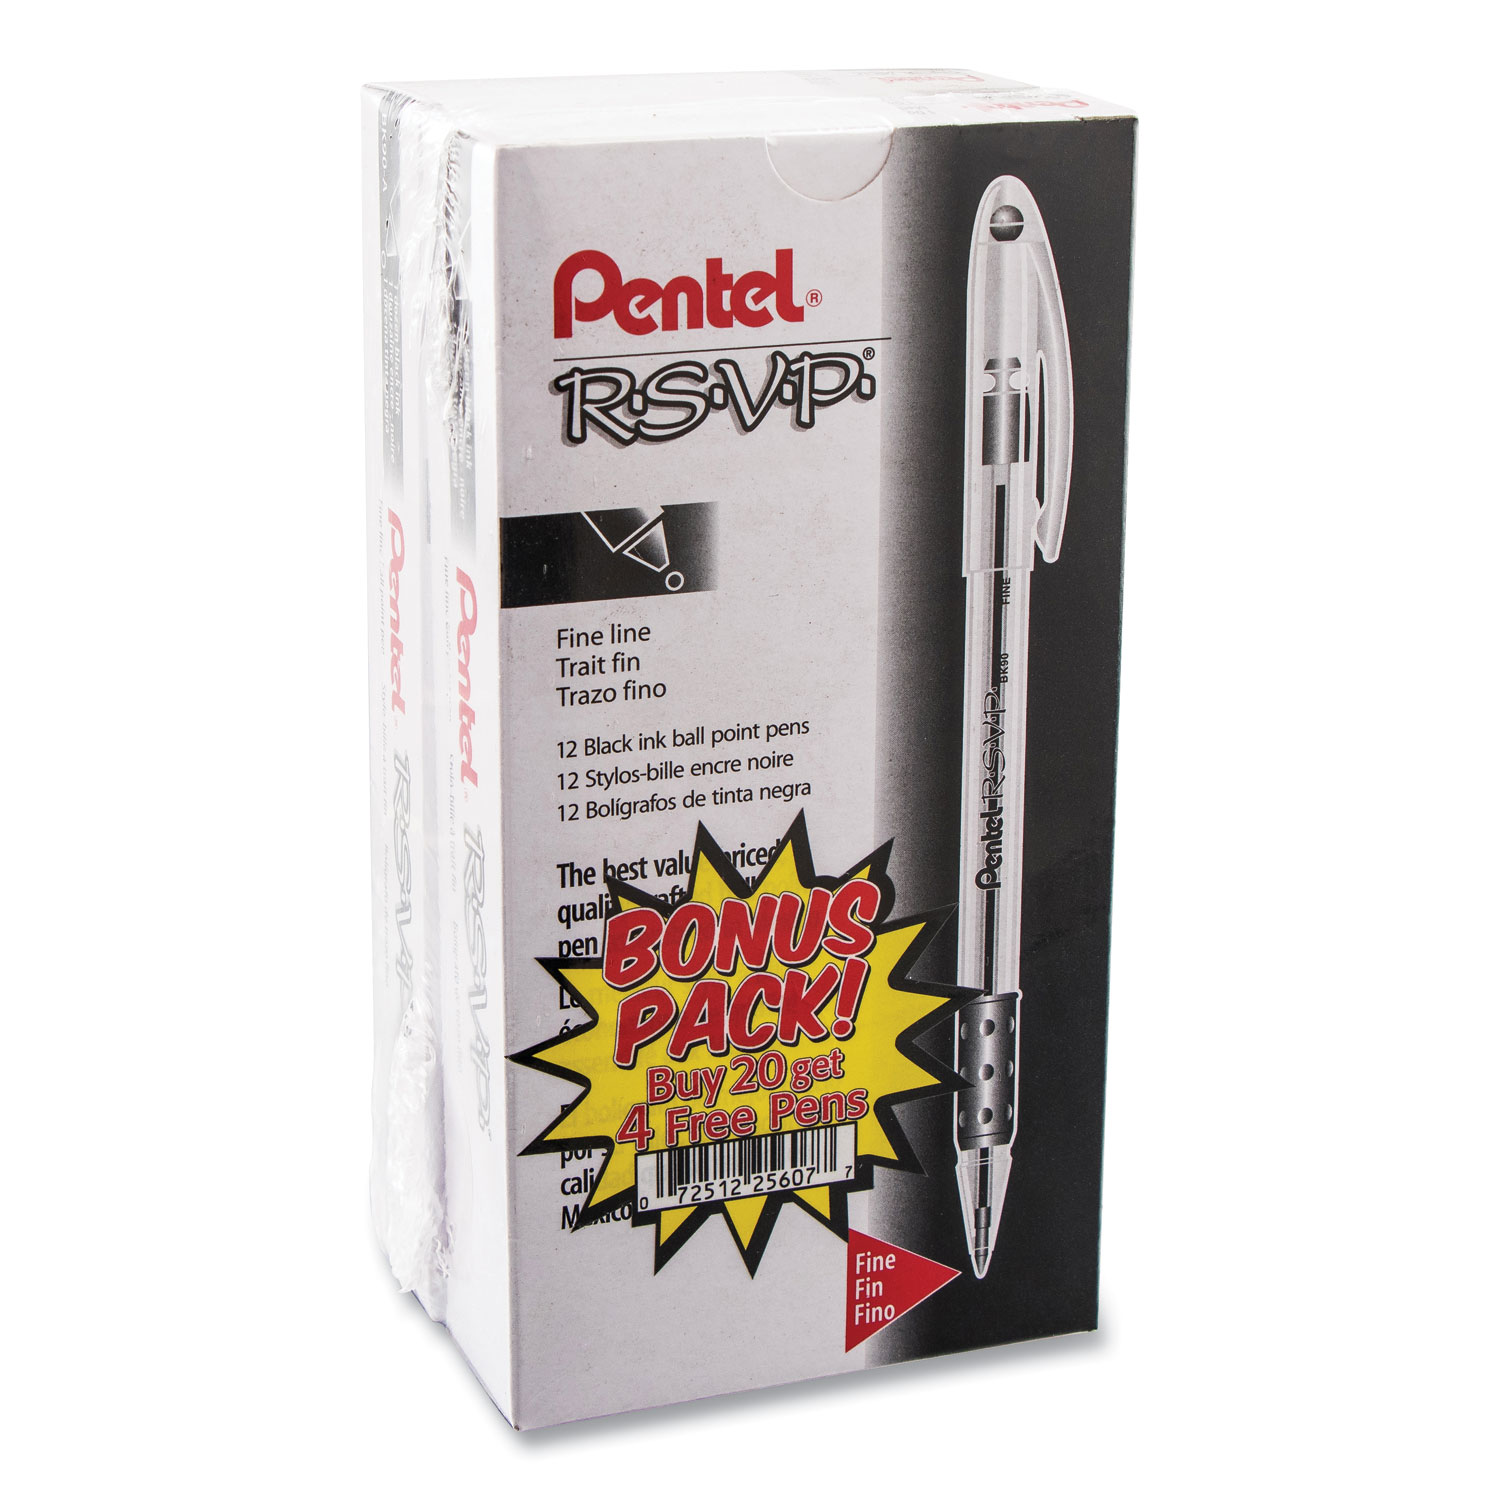  Pentel BK90ASW2 R.S.V.P. Stick Ballpoint Pen Value Pack, 0.7mm, Black Ink, Clear/Black Barrel, 24PK (PENBK90ASW2) 